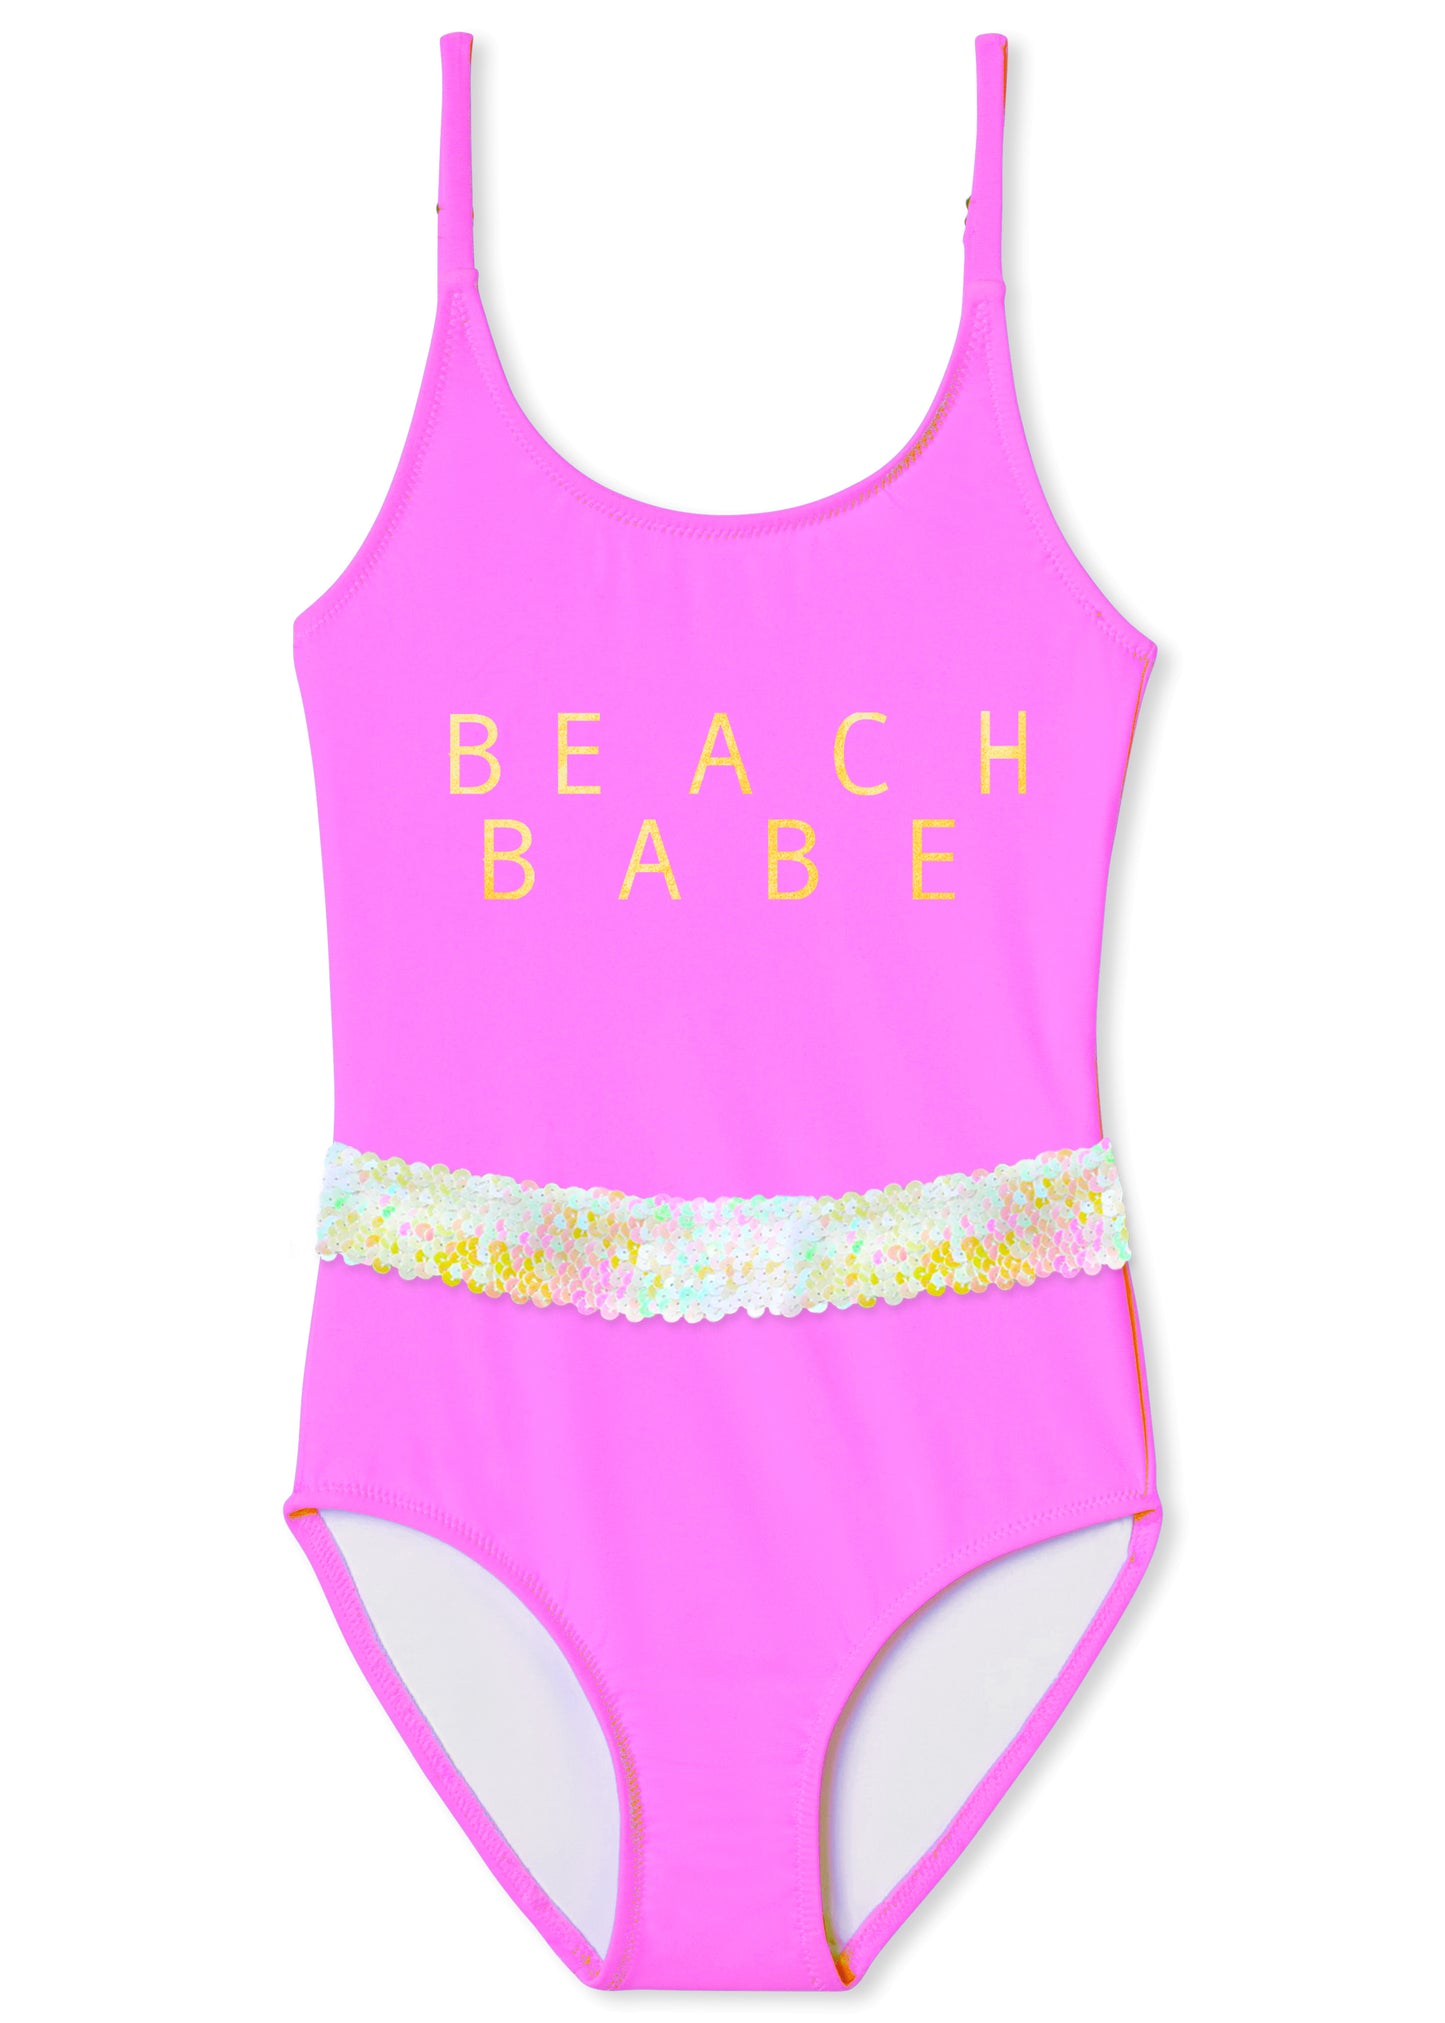 beachwear for girls